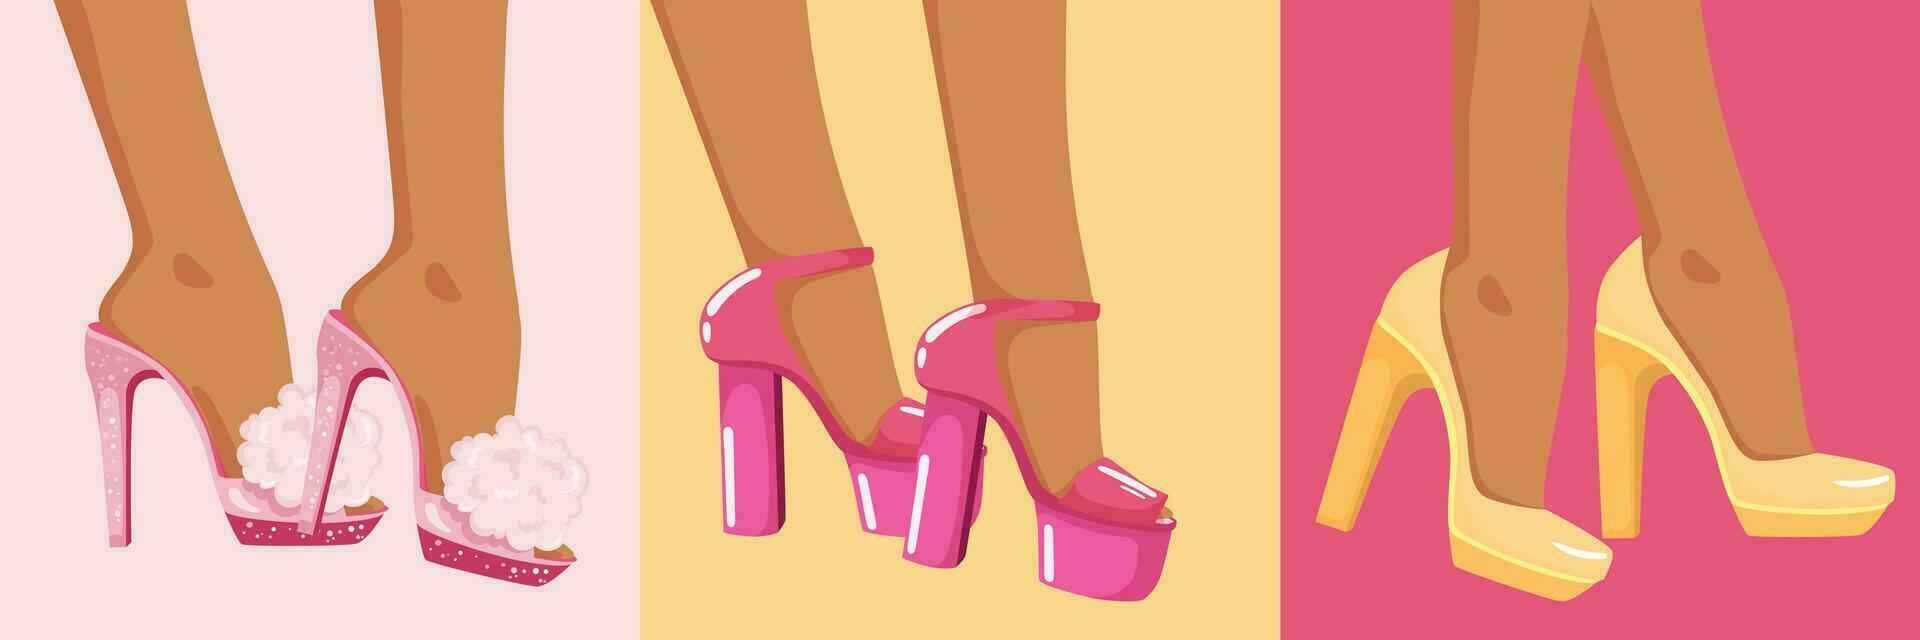 kvinnors ben i högklackade skor. vektor